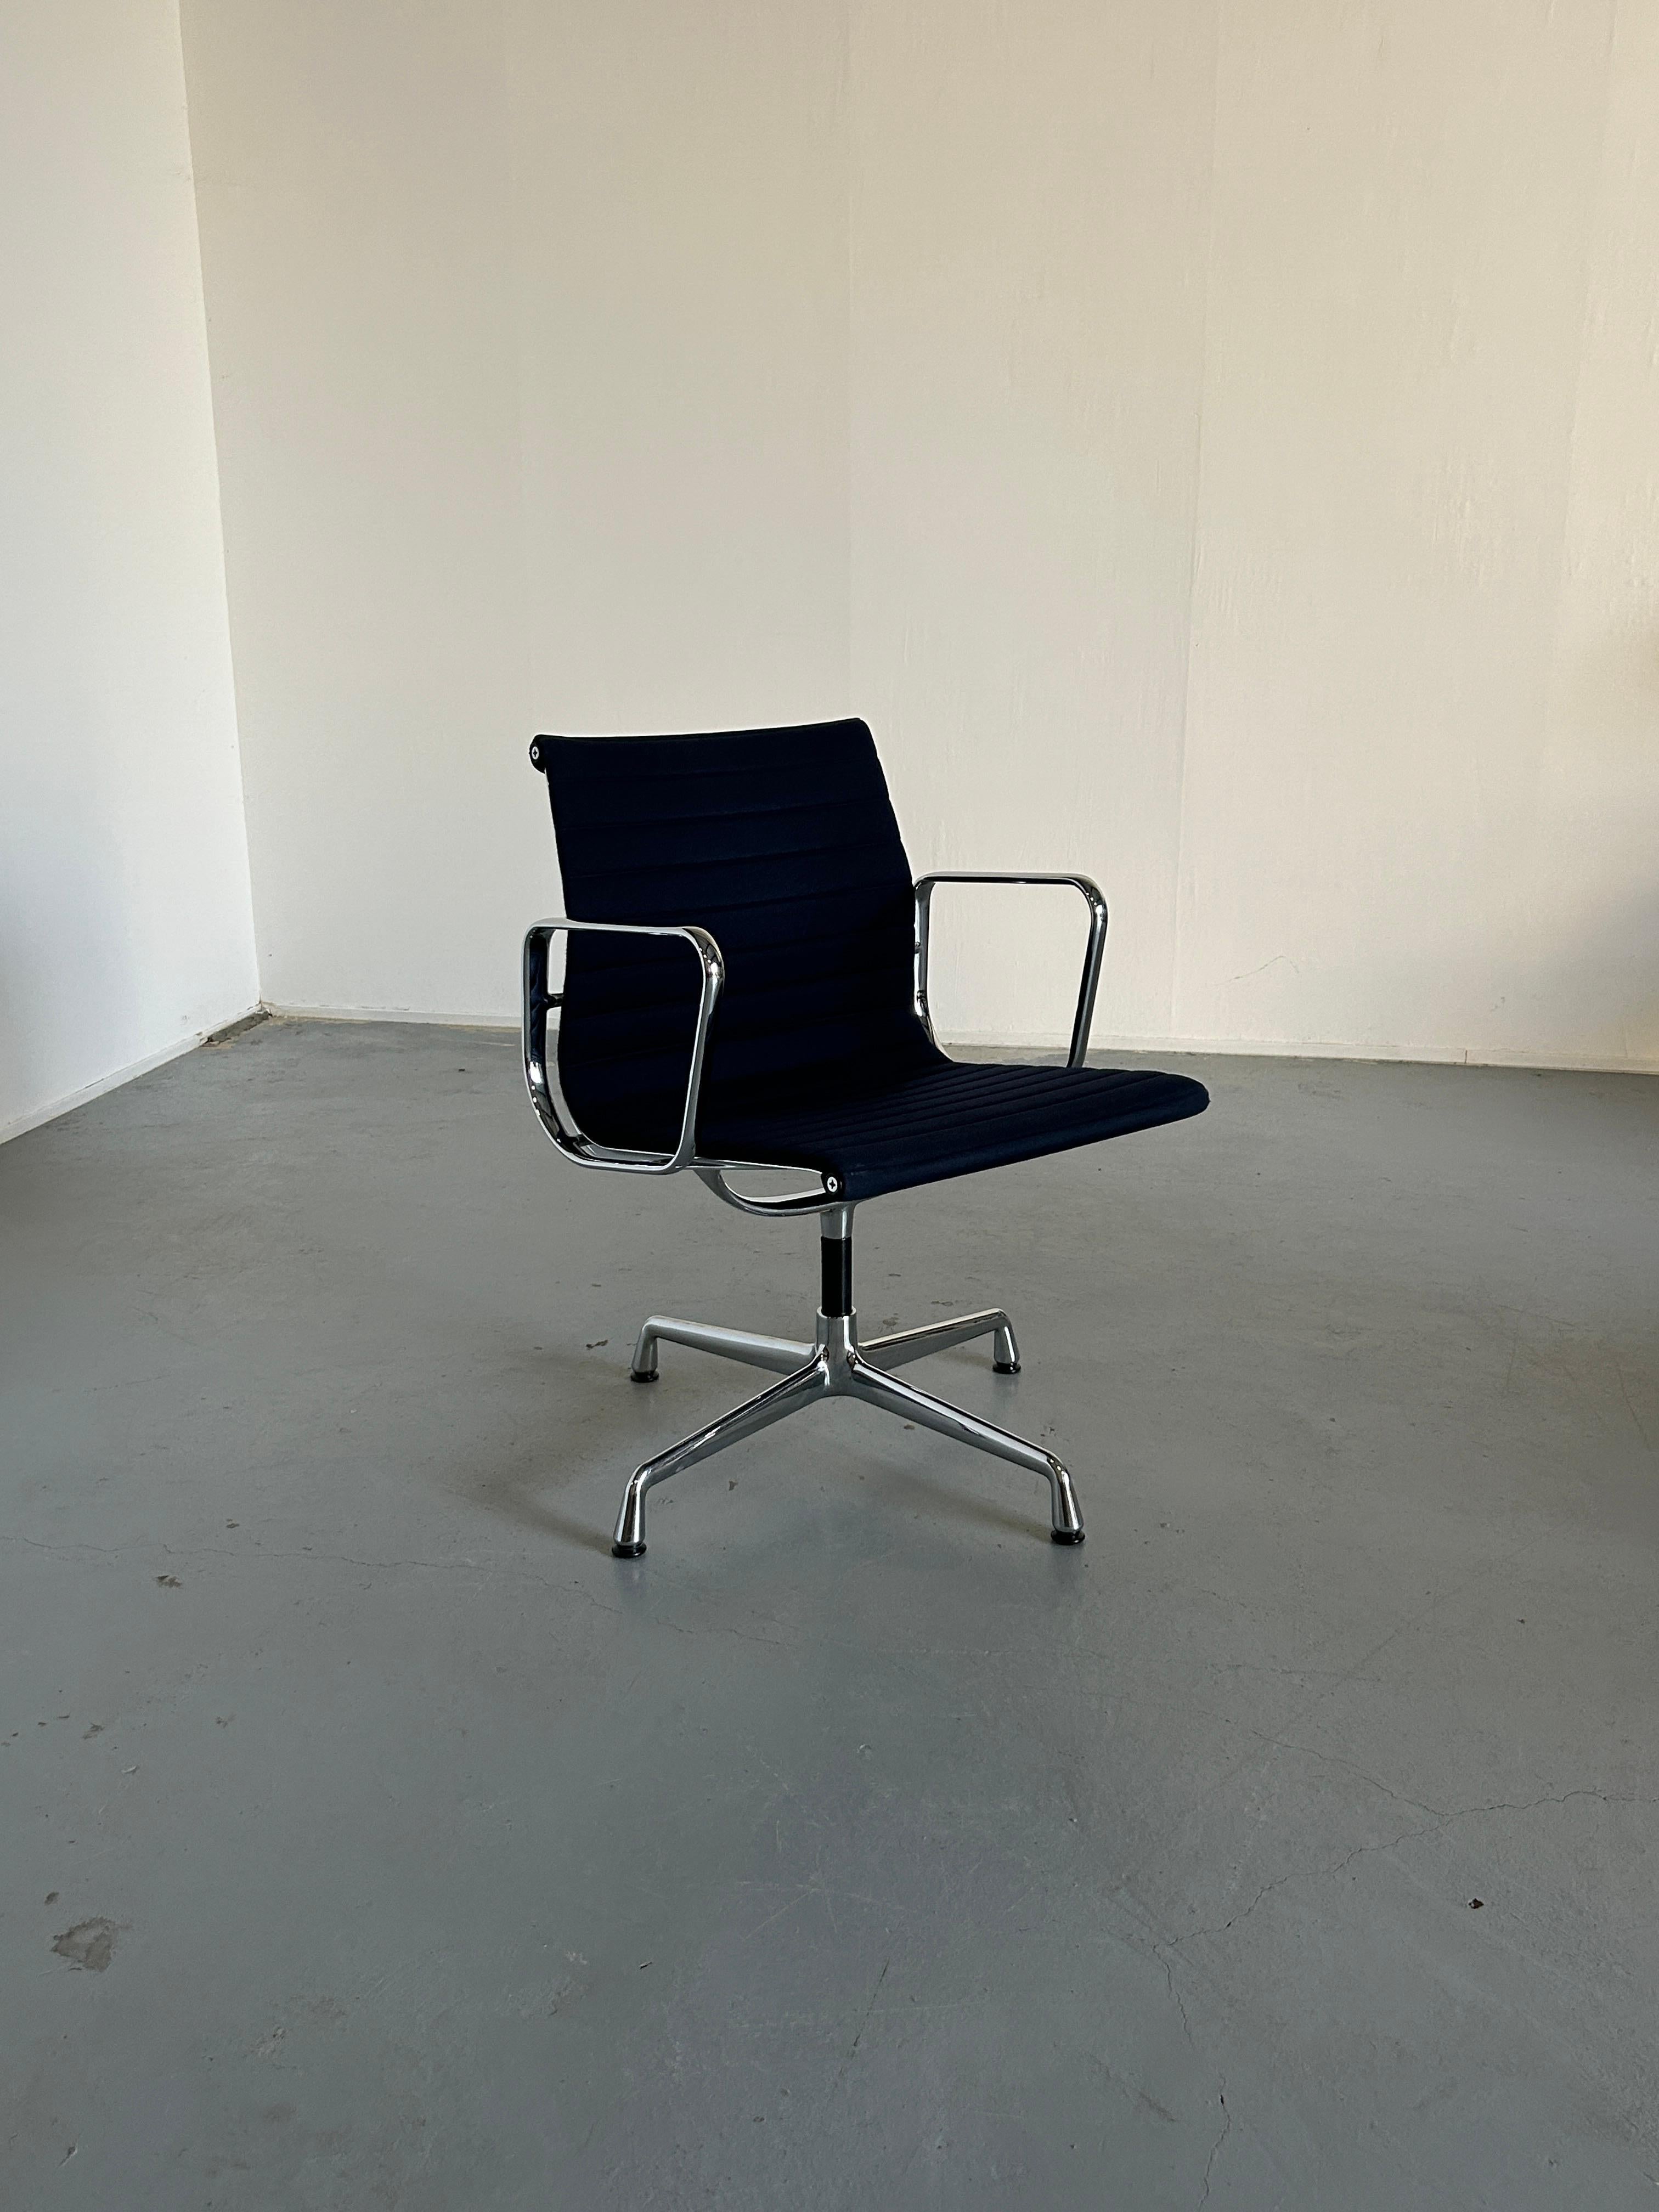 Chaises originales en aluminium EA108 conçues par Charles et Ray Eames en 1958.
Base en aluminium chromé et siège en tissu bleu avec mécanisme pivotant. Édition Vitra, signée.
Une qualité de production exceptionnelle.

Produit en 1990. 

Dans l'état